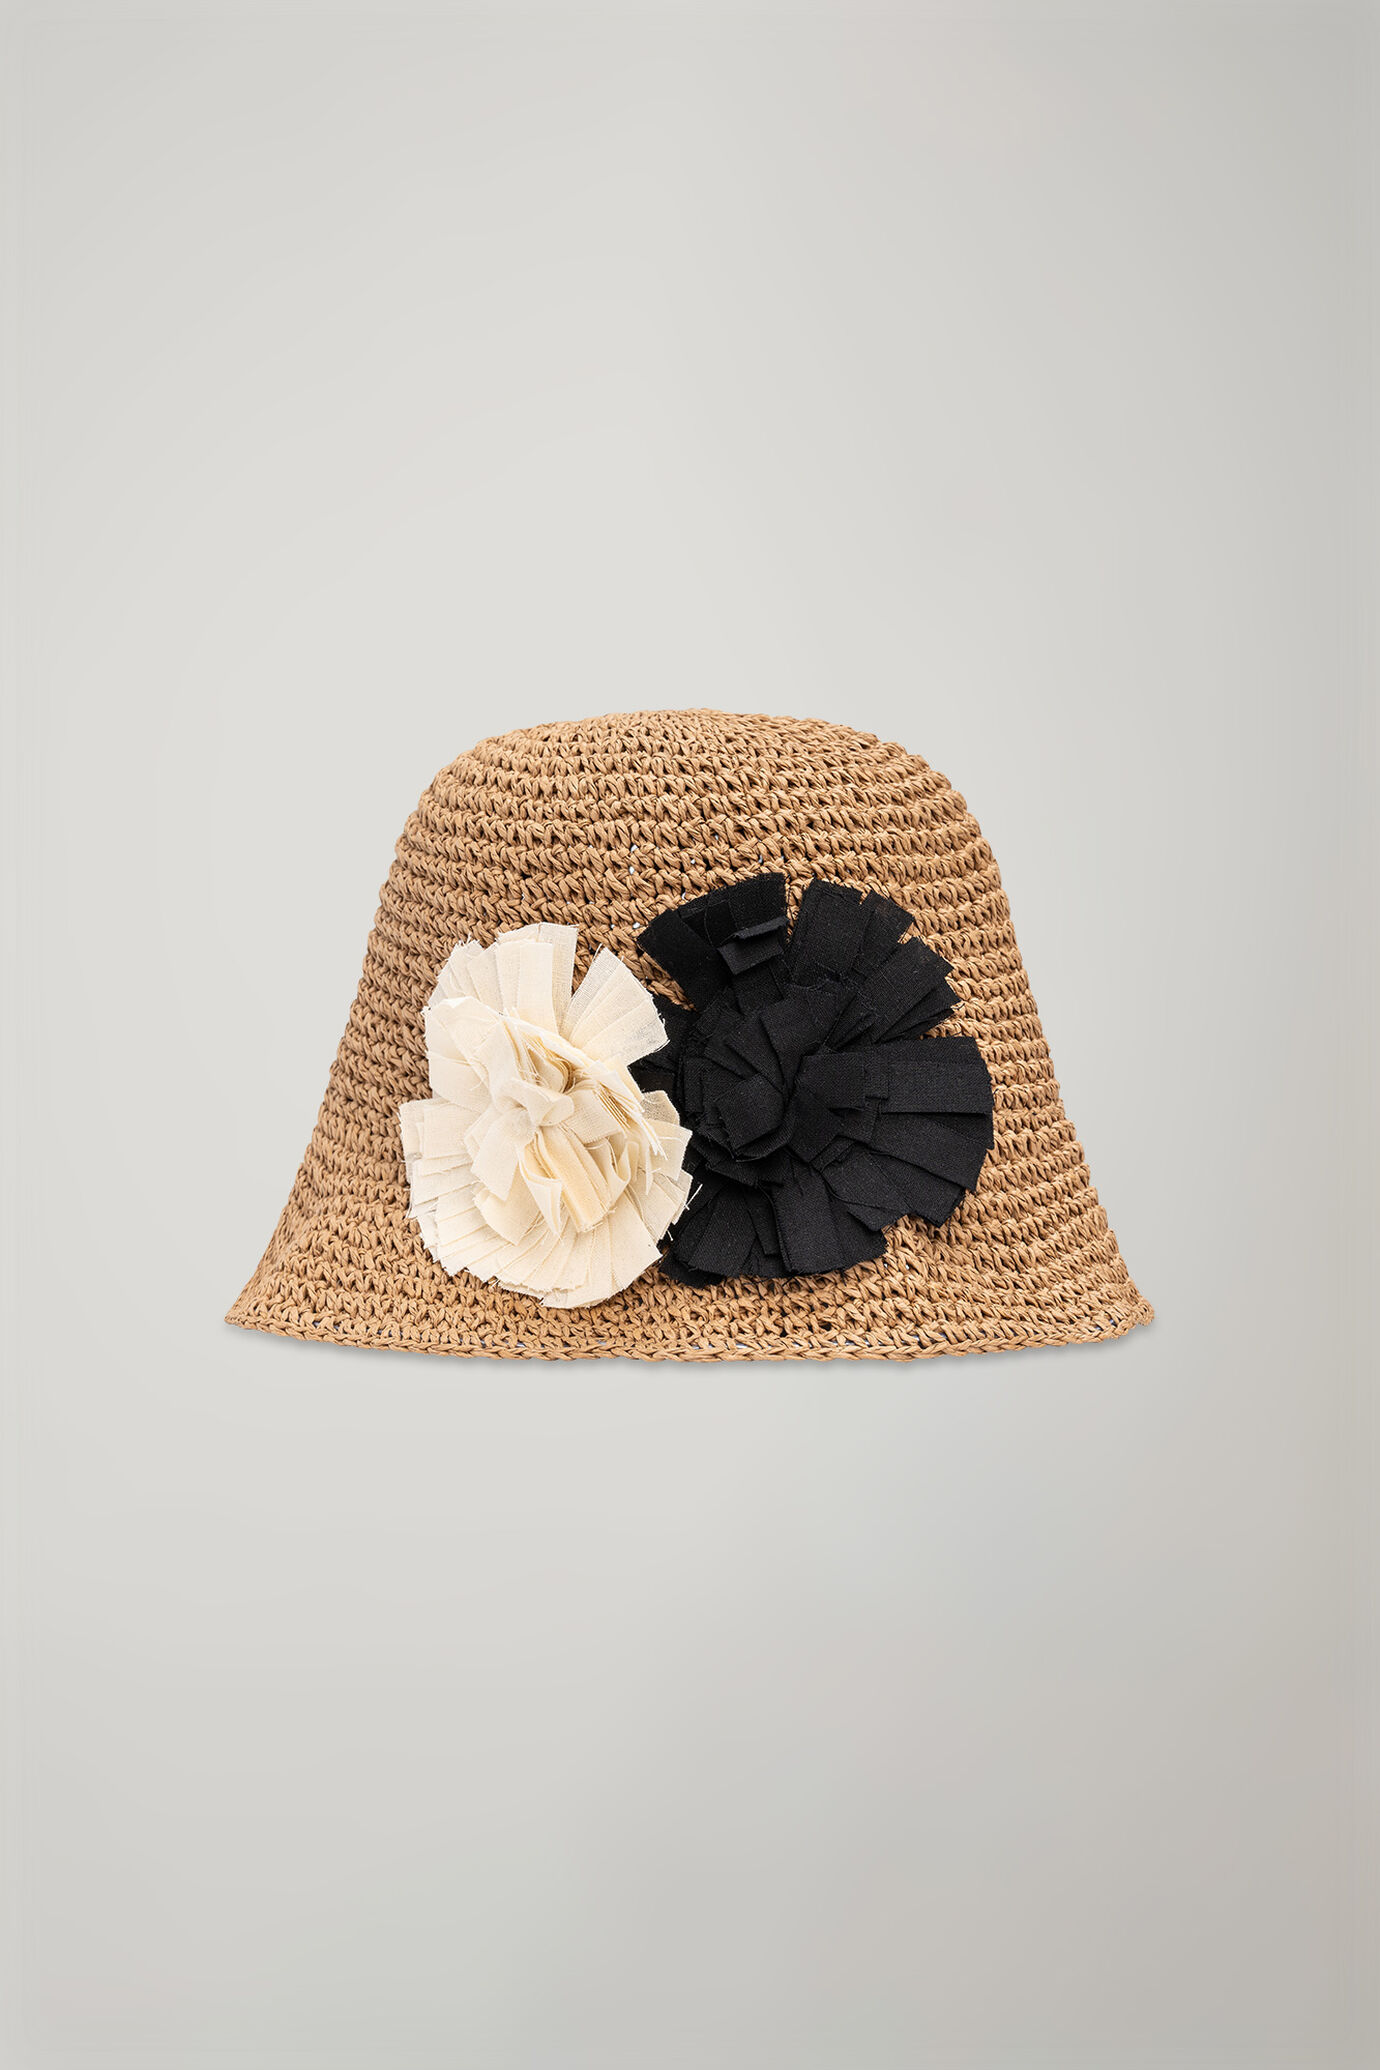 Women's hat in raffia